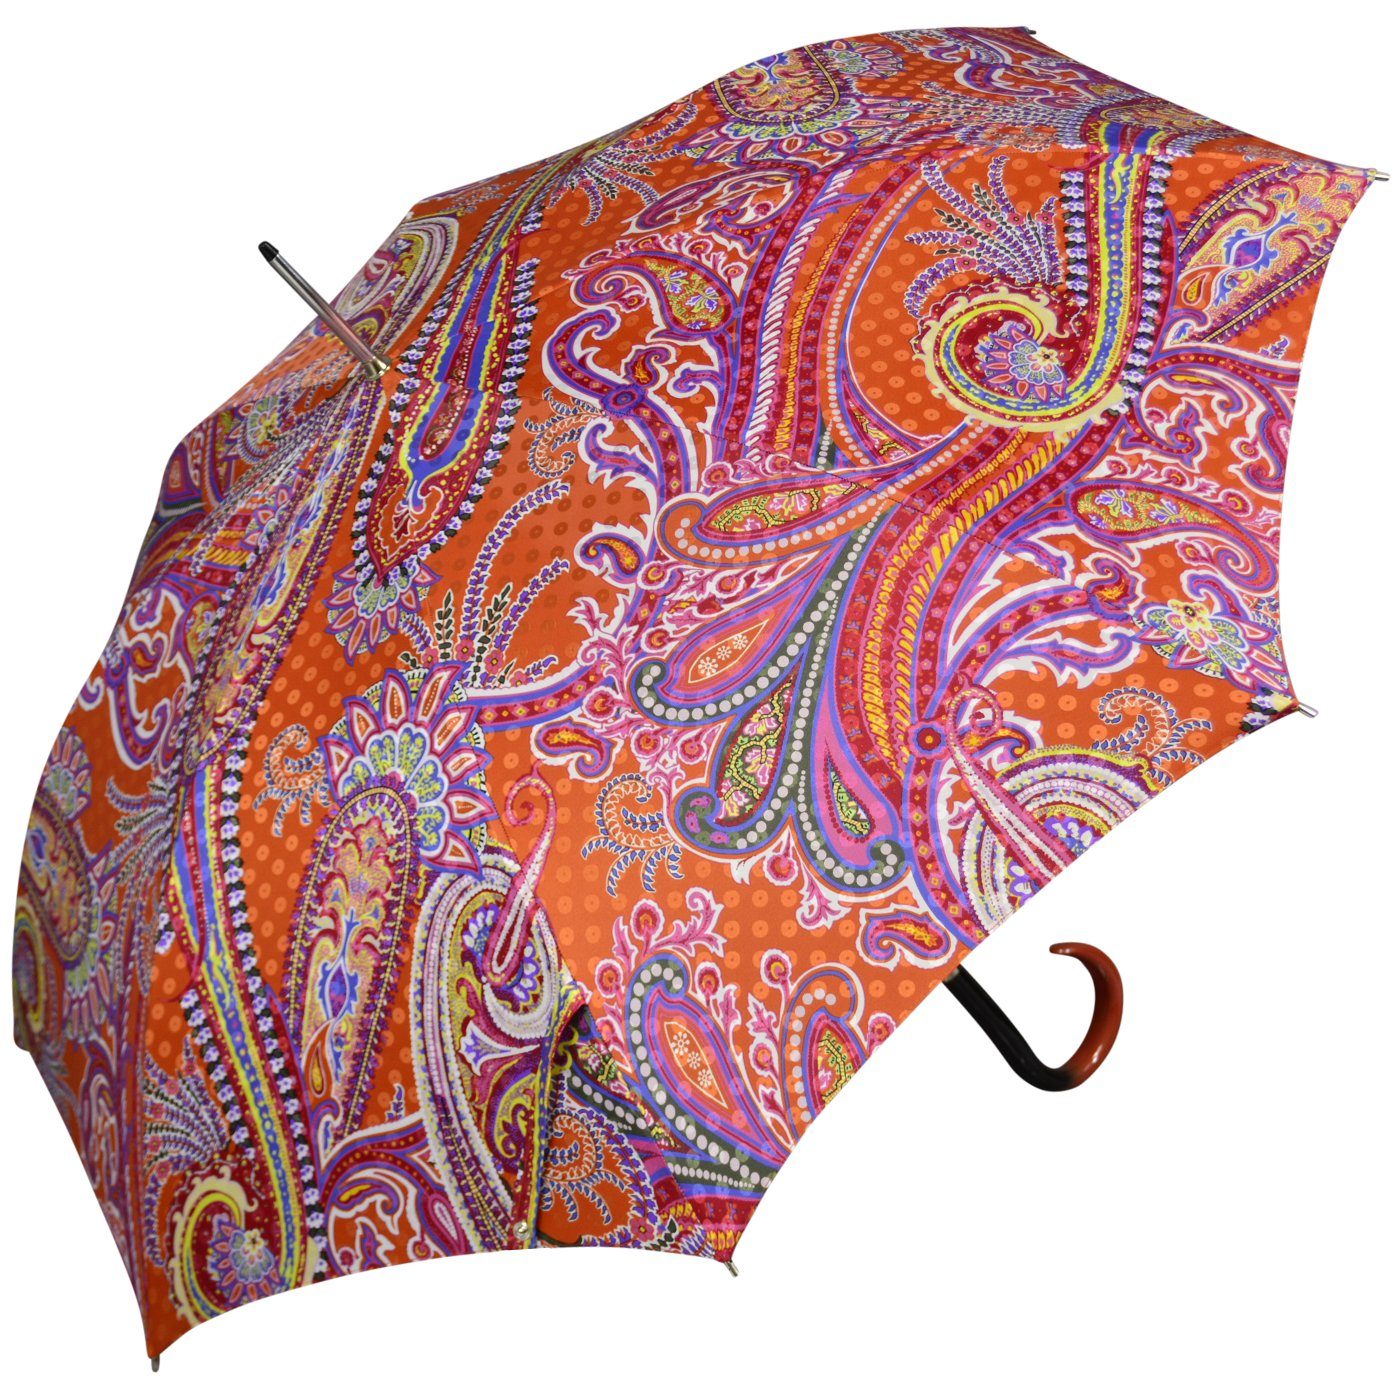 doppler MANUFAKTUR Langregenschirm edler, handgearbeiteter Manufaktur- Regenschirm, einzigartige Designs in leuchtenden Farben | Stockschirme